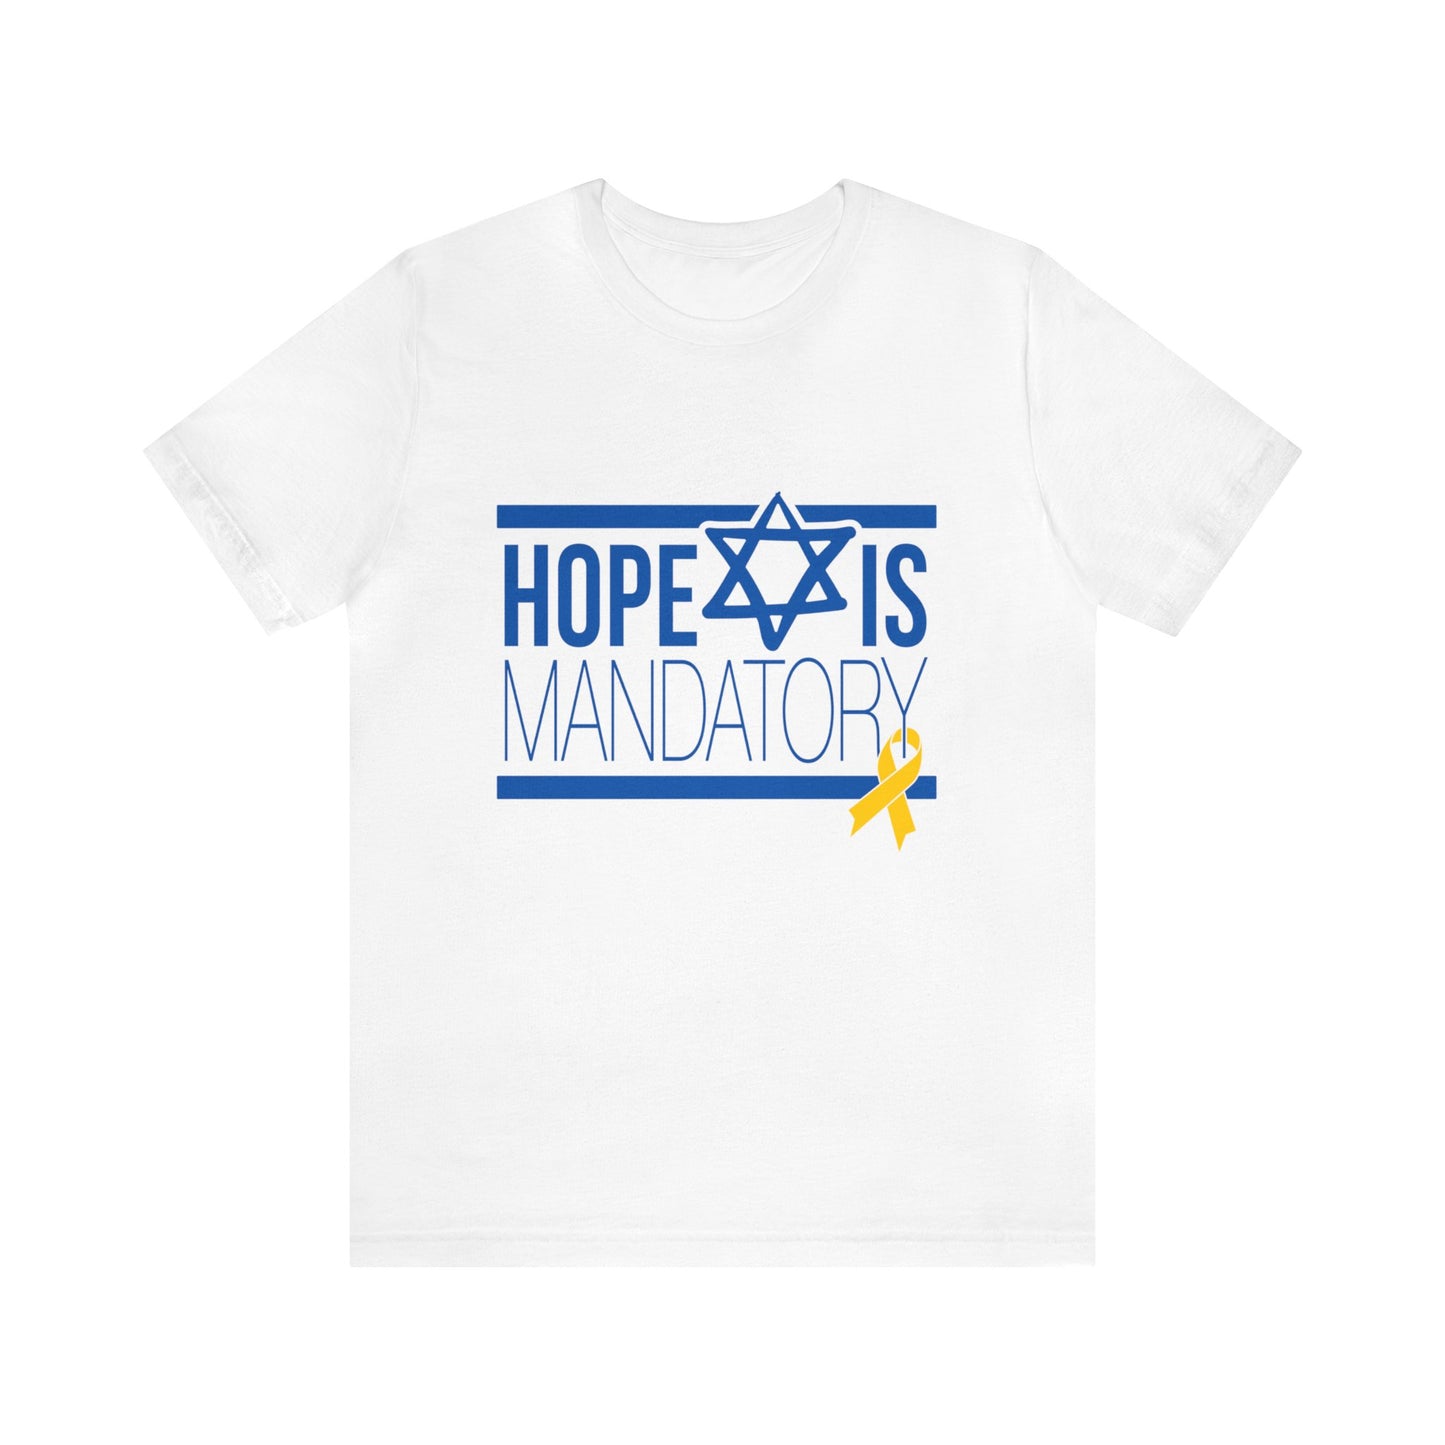 the HOPE tshirt